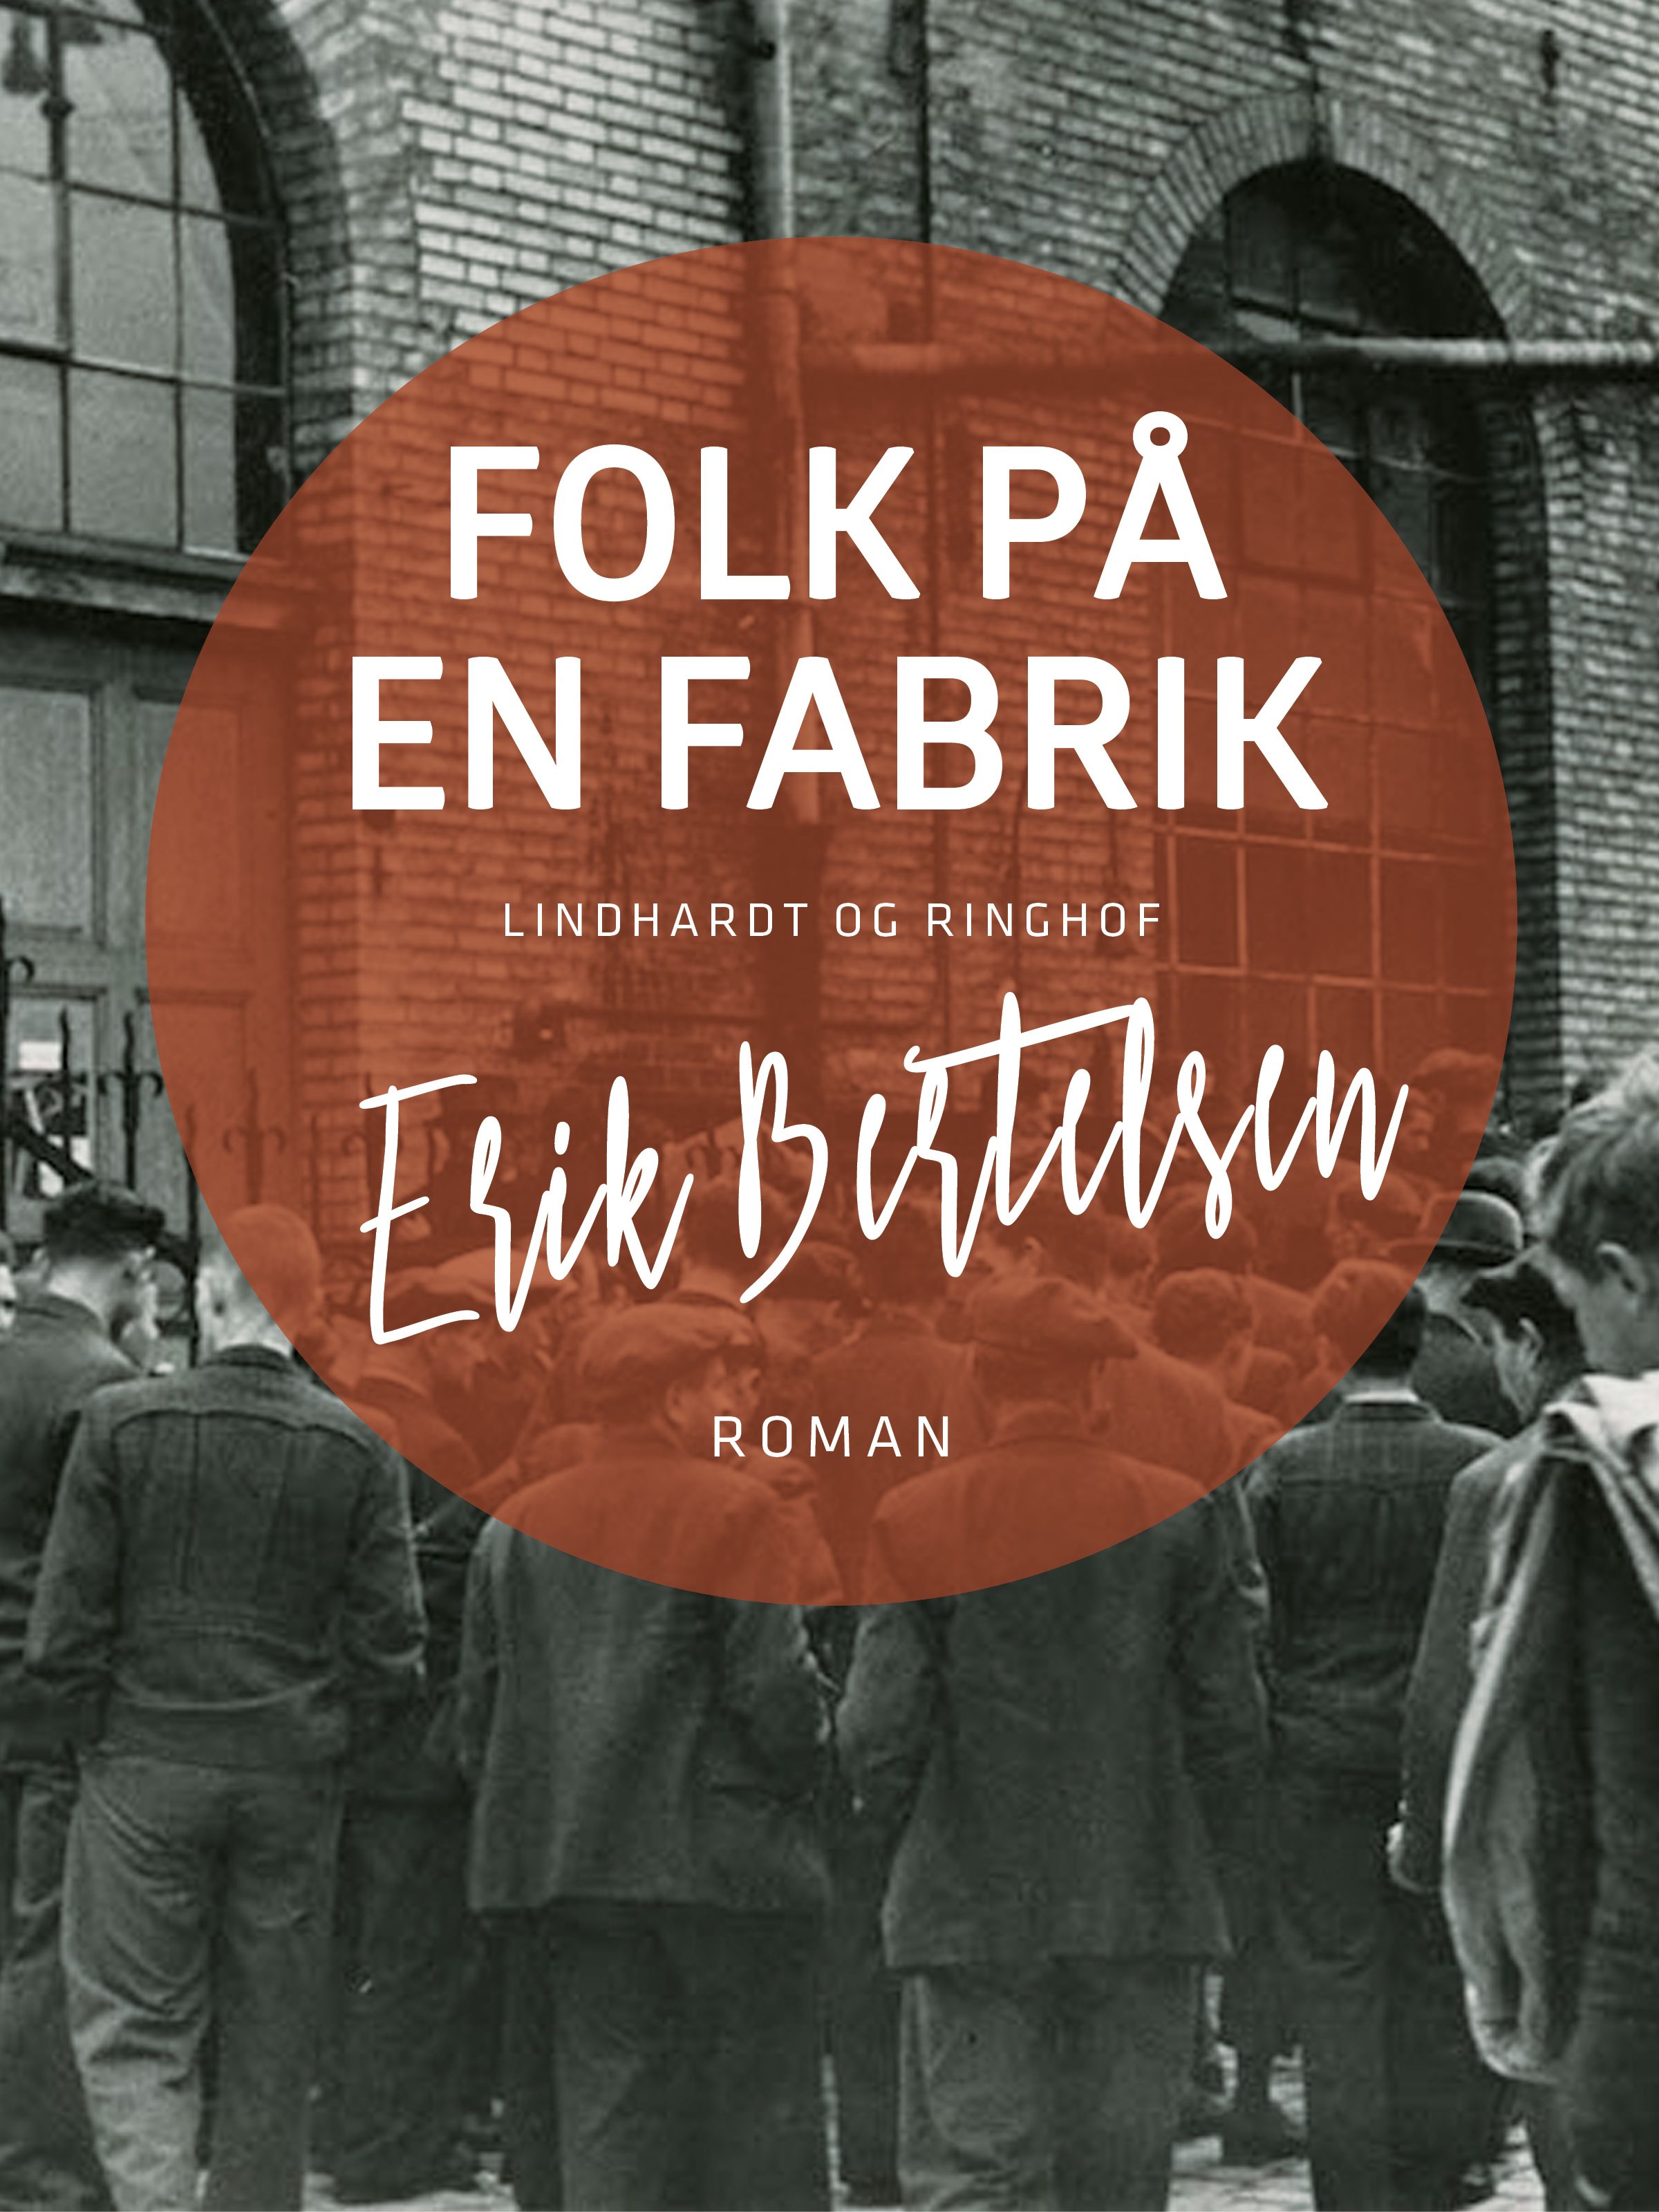 Folk på en fabrik, audiobook by Erik Bertelsen